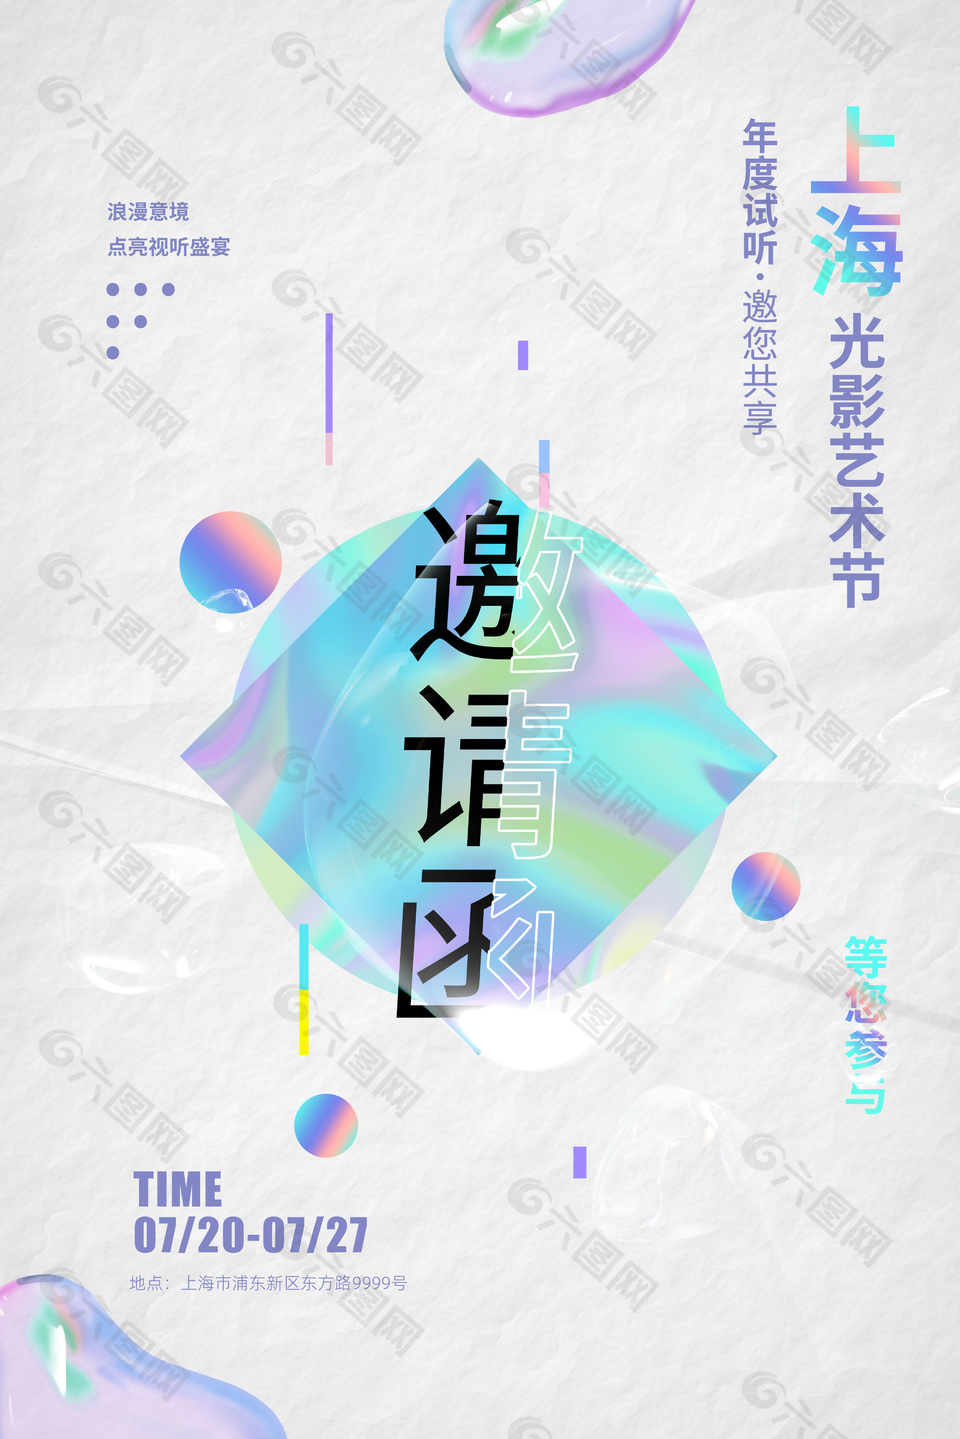 上海光影艺术节邀请函素材设计下载